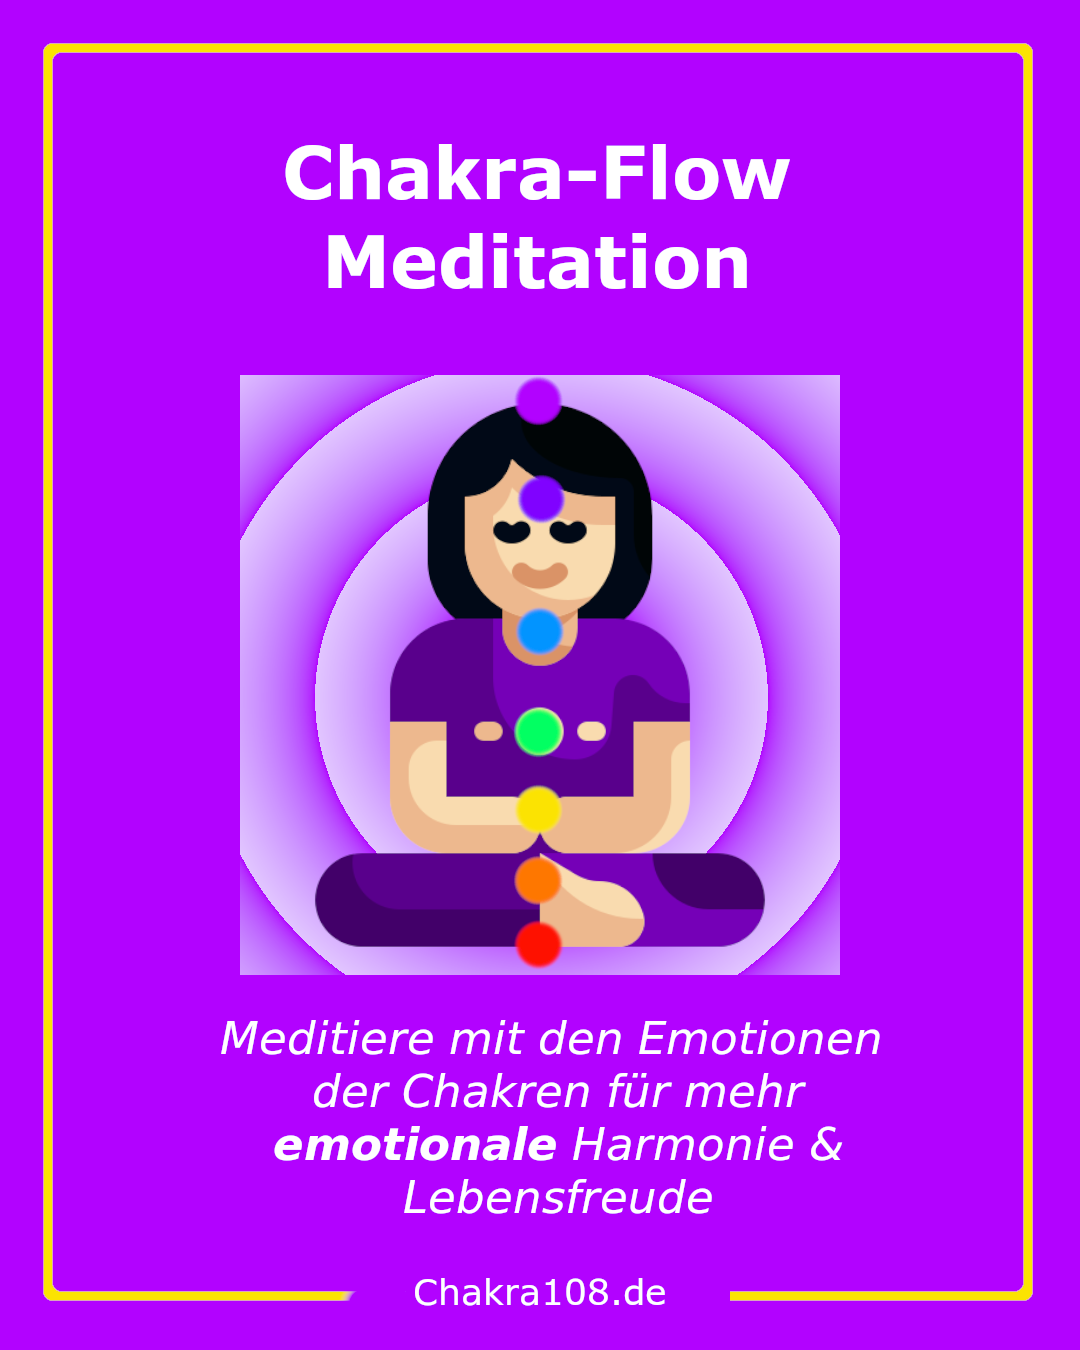 Die Chakra-Flow-Meditation ist eine Chakra-Meditation für die Emotionen in den Chakren - Für mehr emotionale Harmonie und Lebensfreude